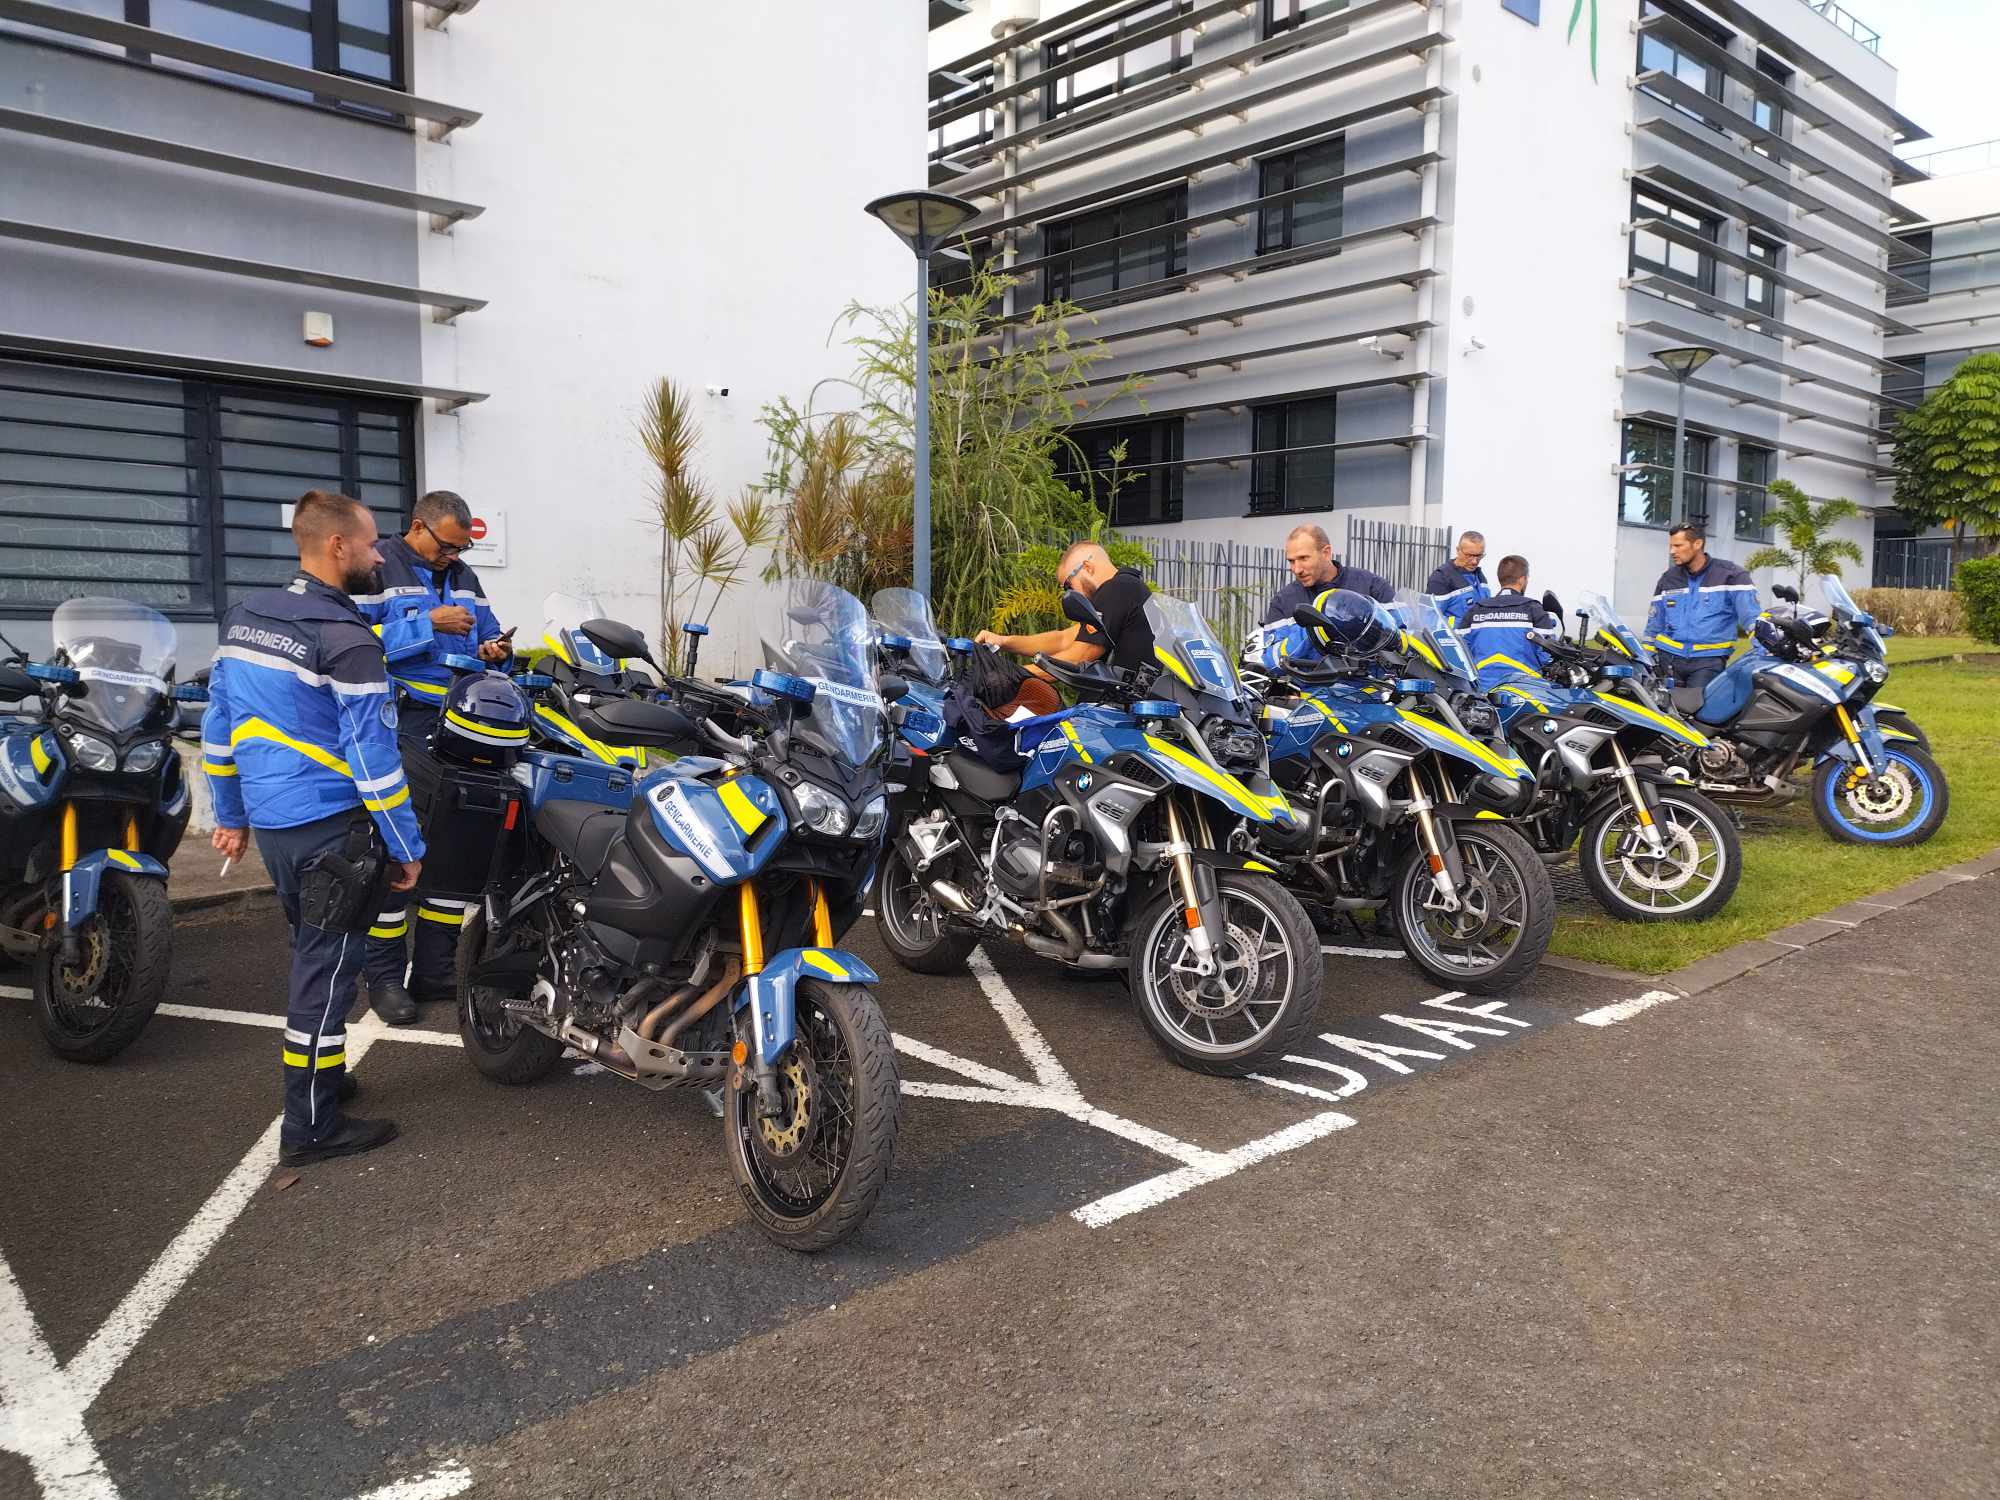     Une formation approfondie pour les motards avec des gendarmes

